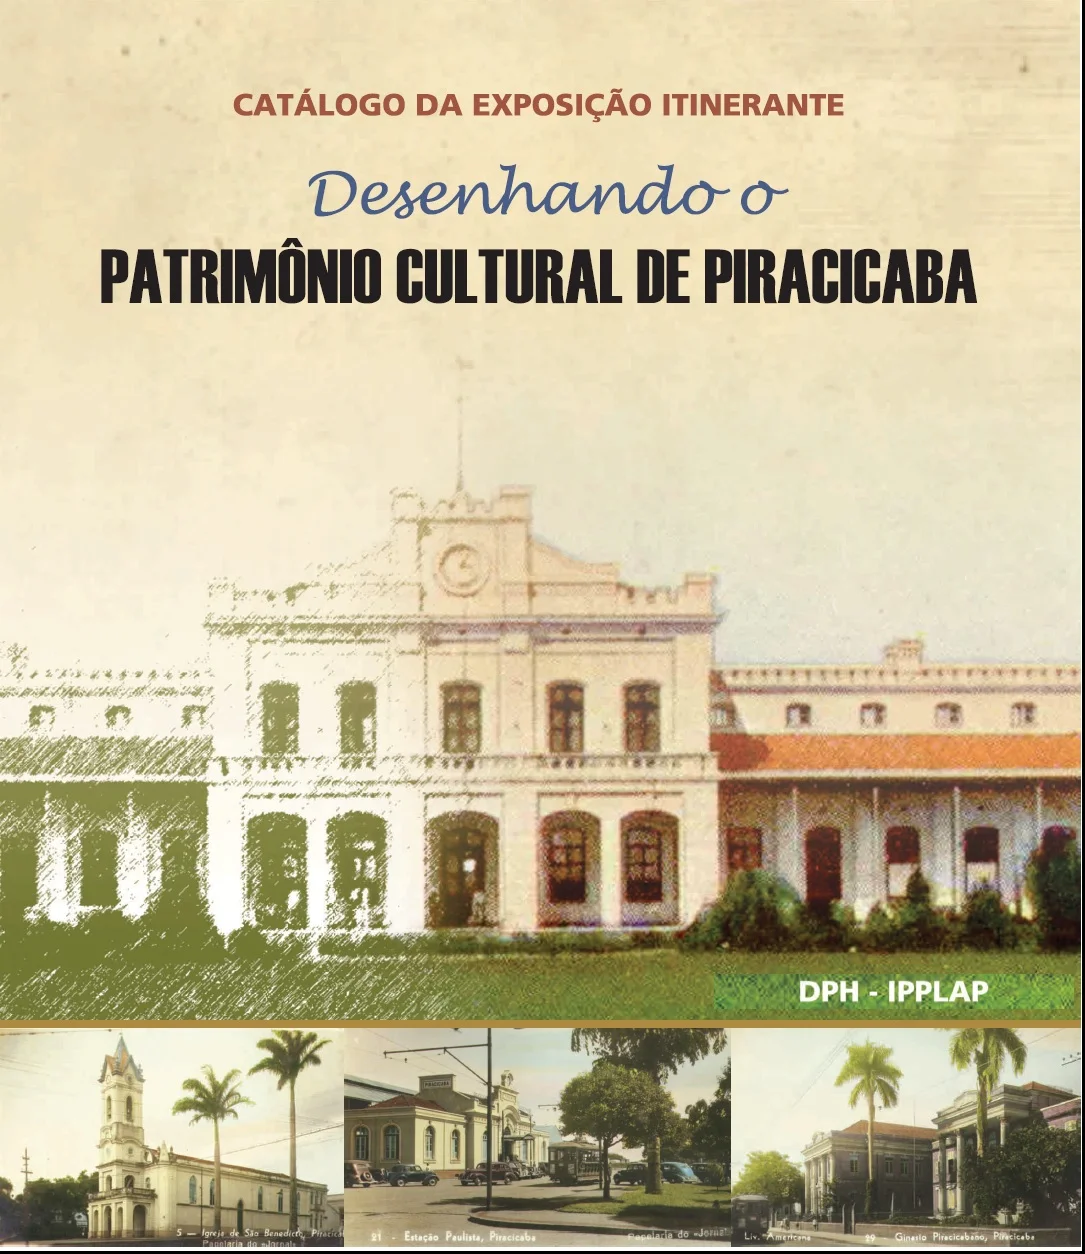 Capa do catálogo, com desenhos de prédios históricos de Piracicaba